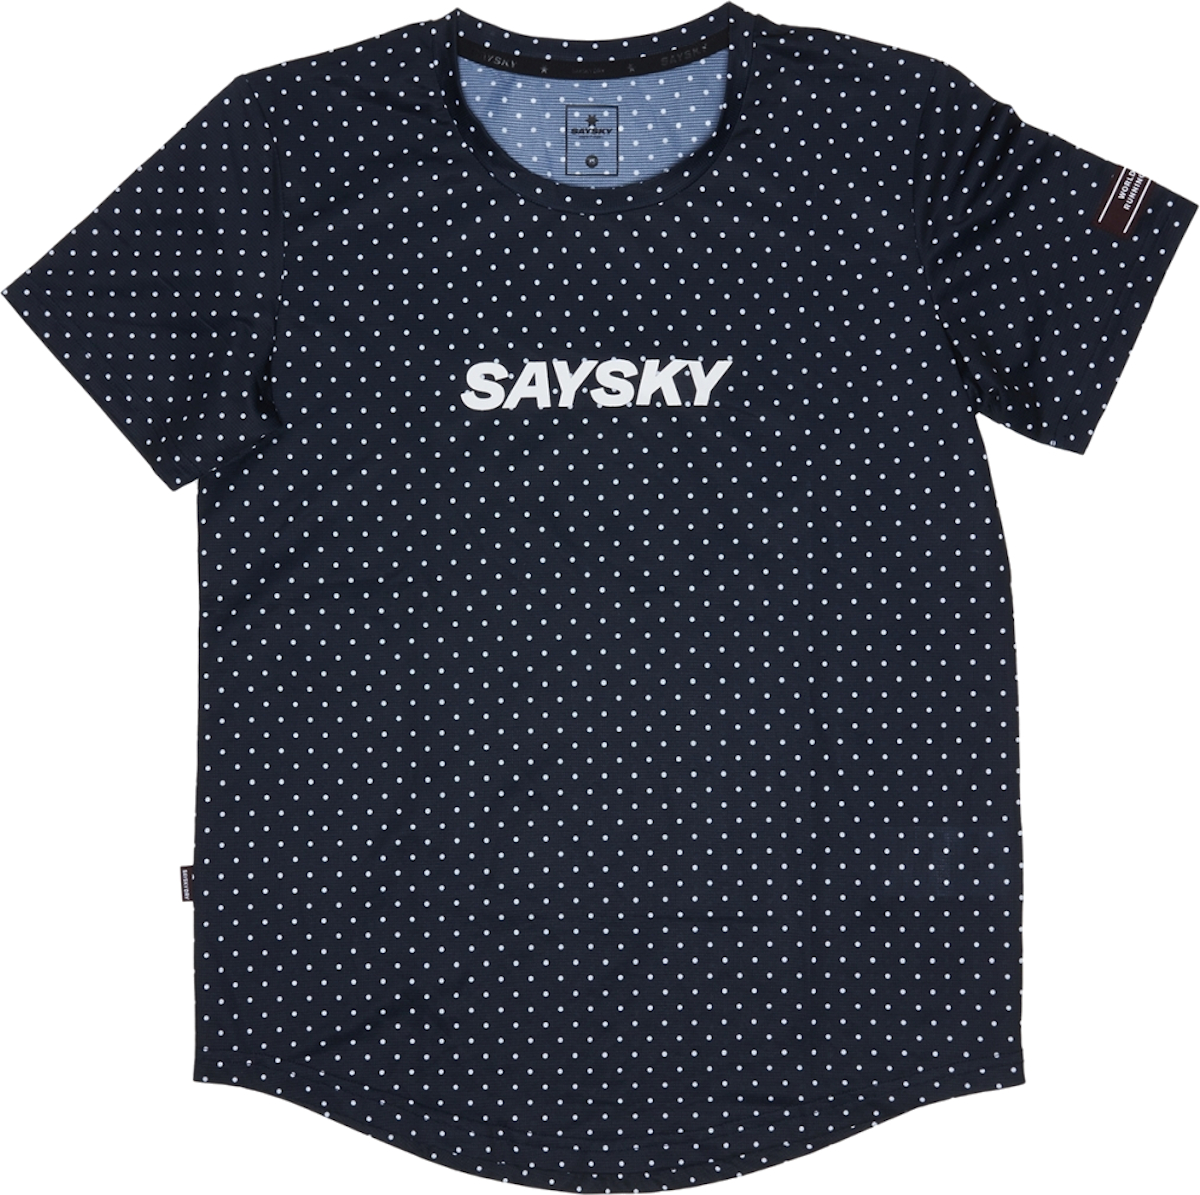 Saysky Polka Combat T-Shirt